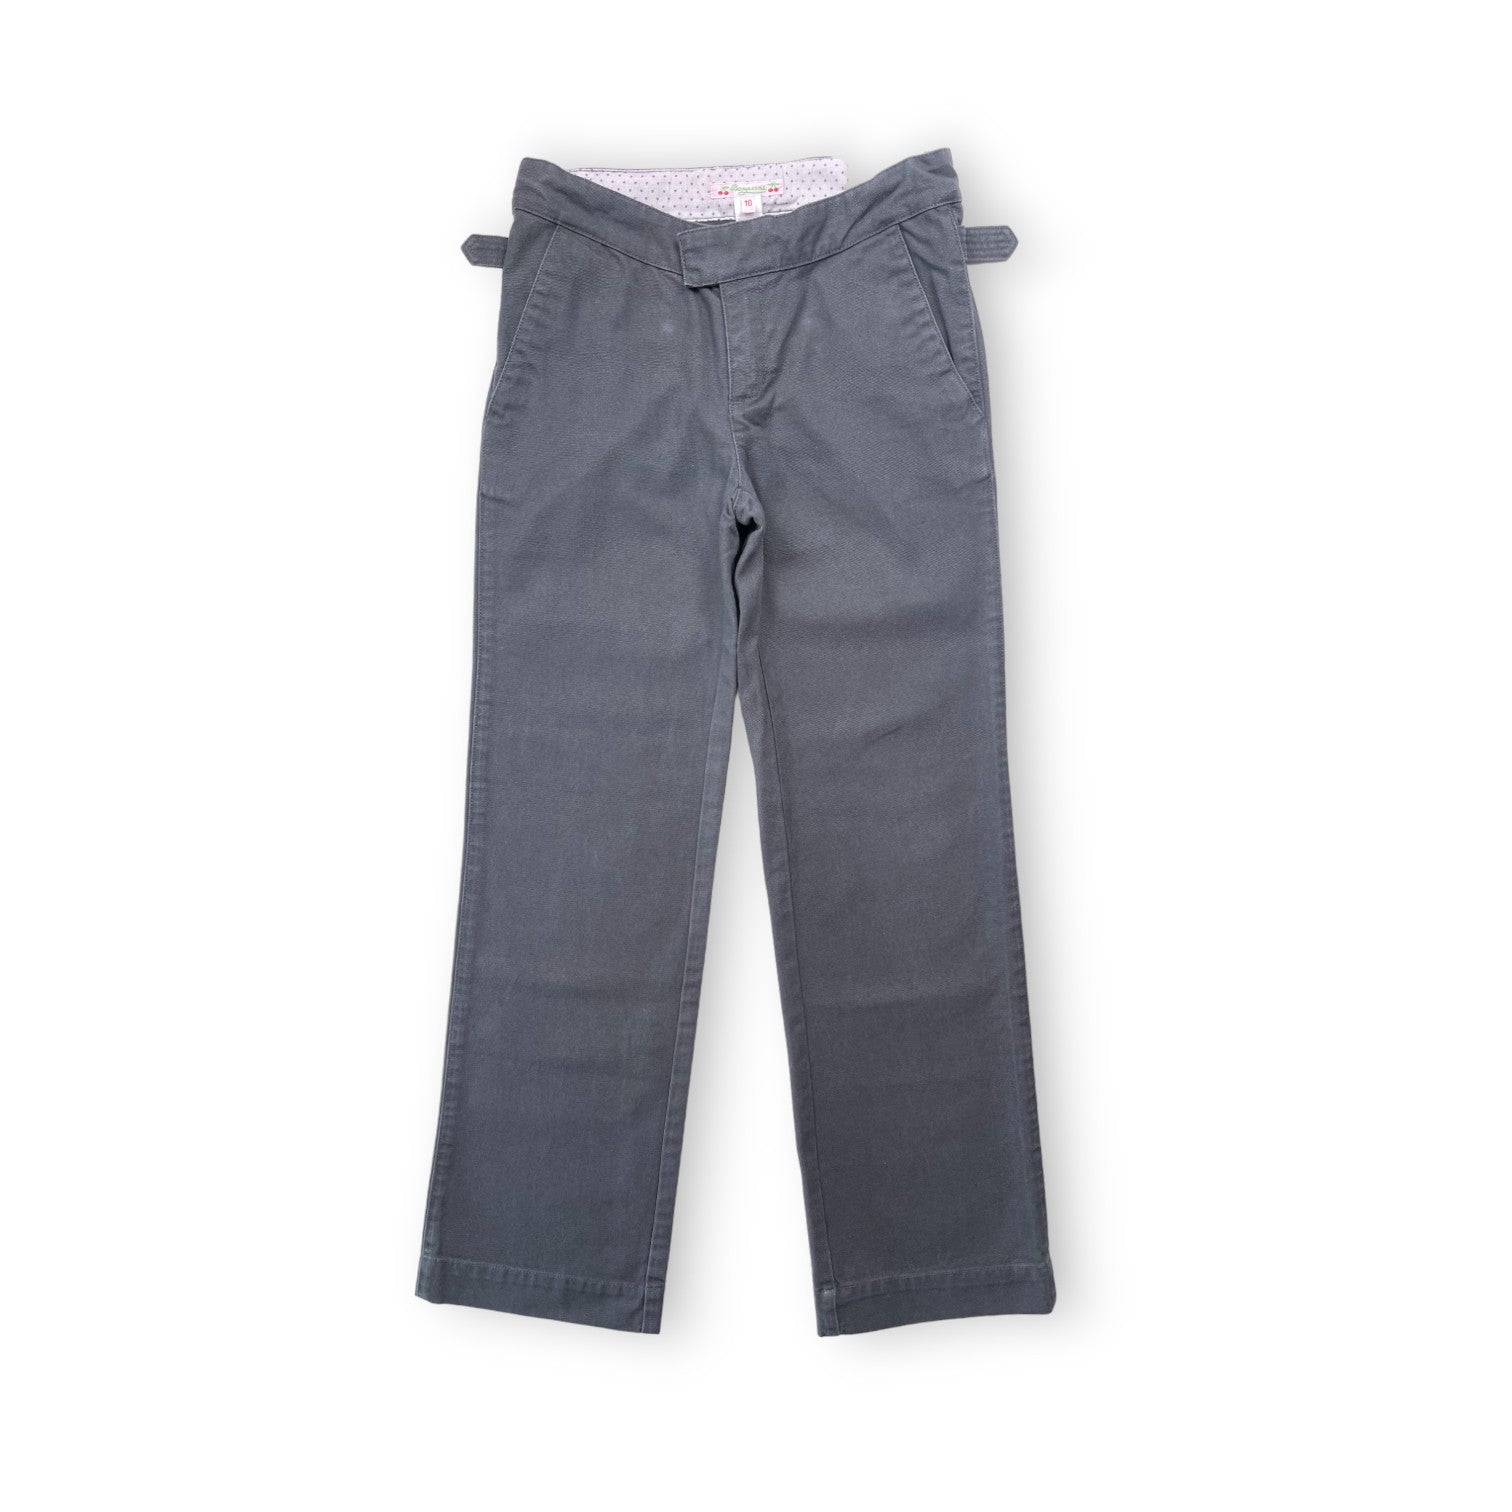 BONPOINT - Pantalon vert/gris droit - 10 ans